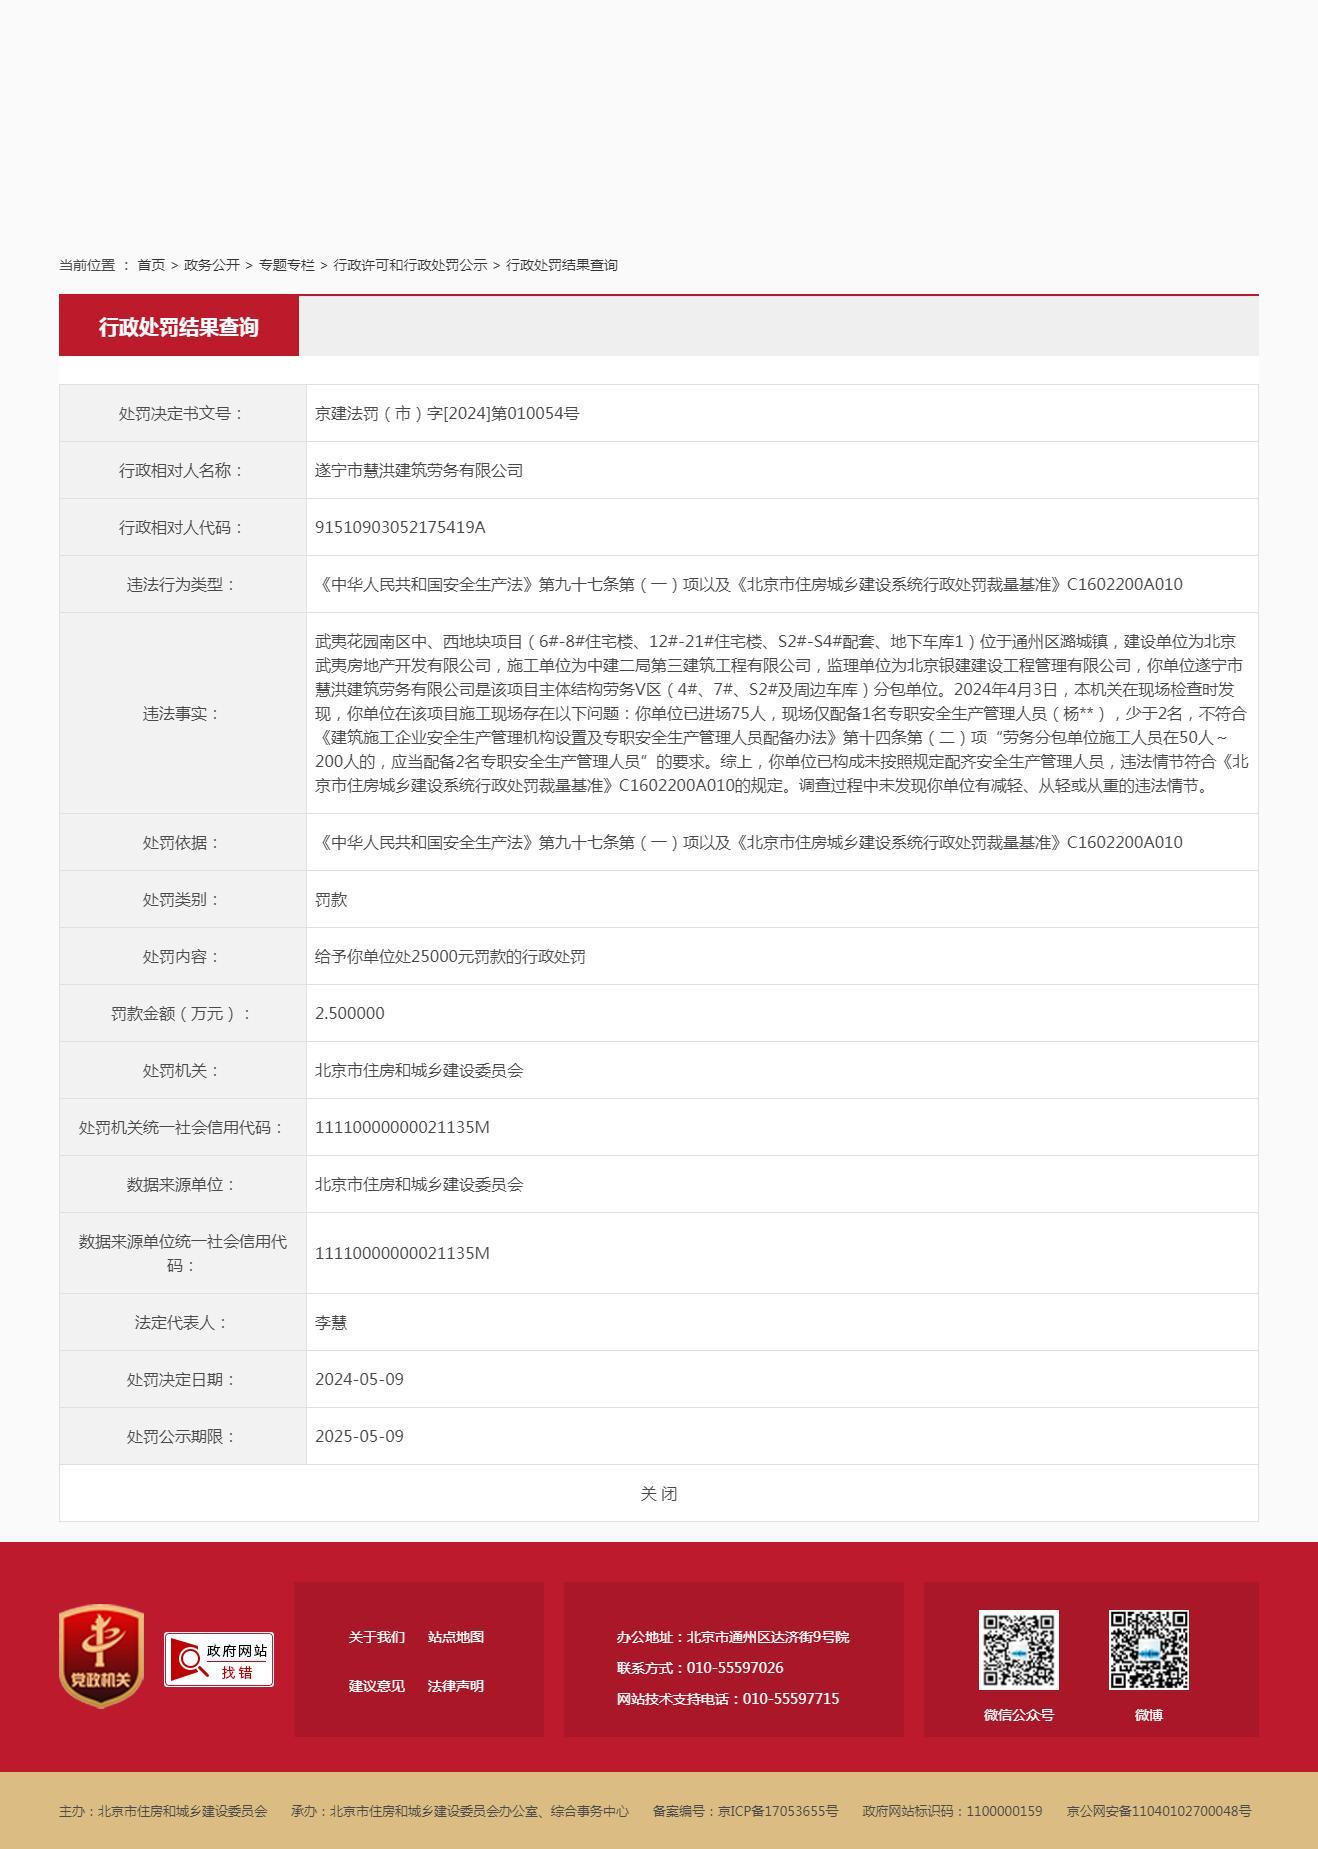 遂宁市慧洪建筑劳务有限公司因未按照规定配齐安全生产管理人员被罚2.5万元